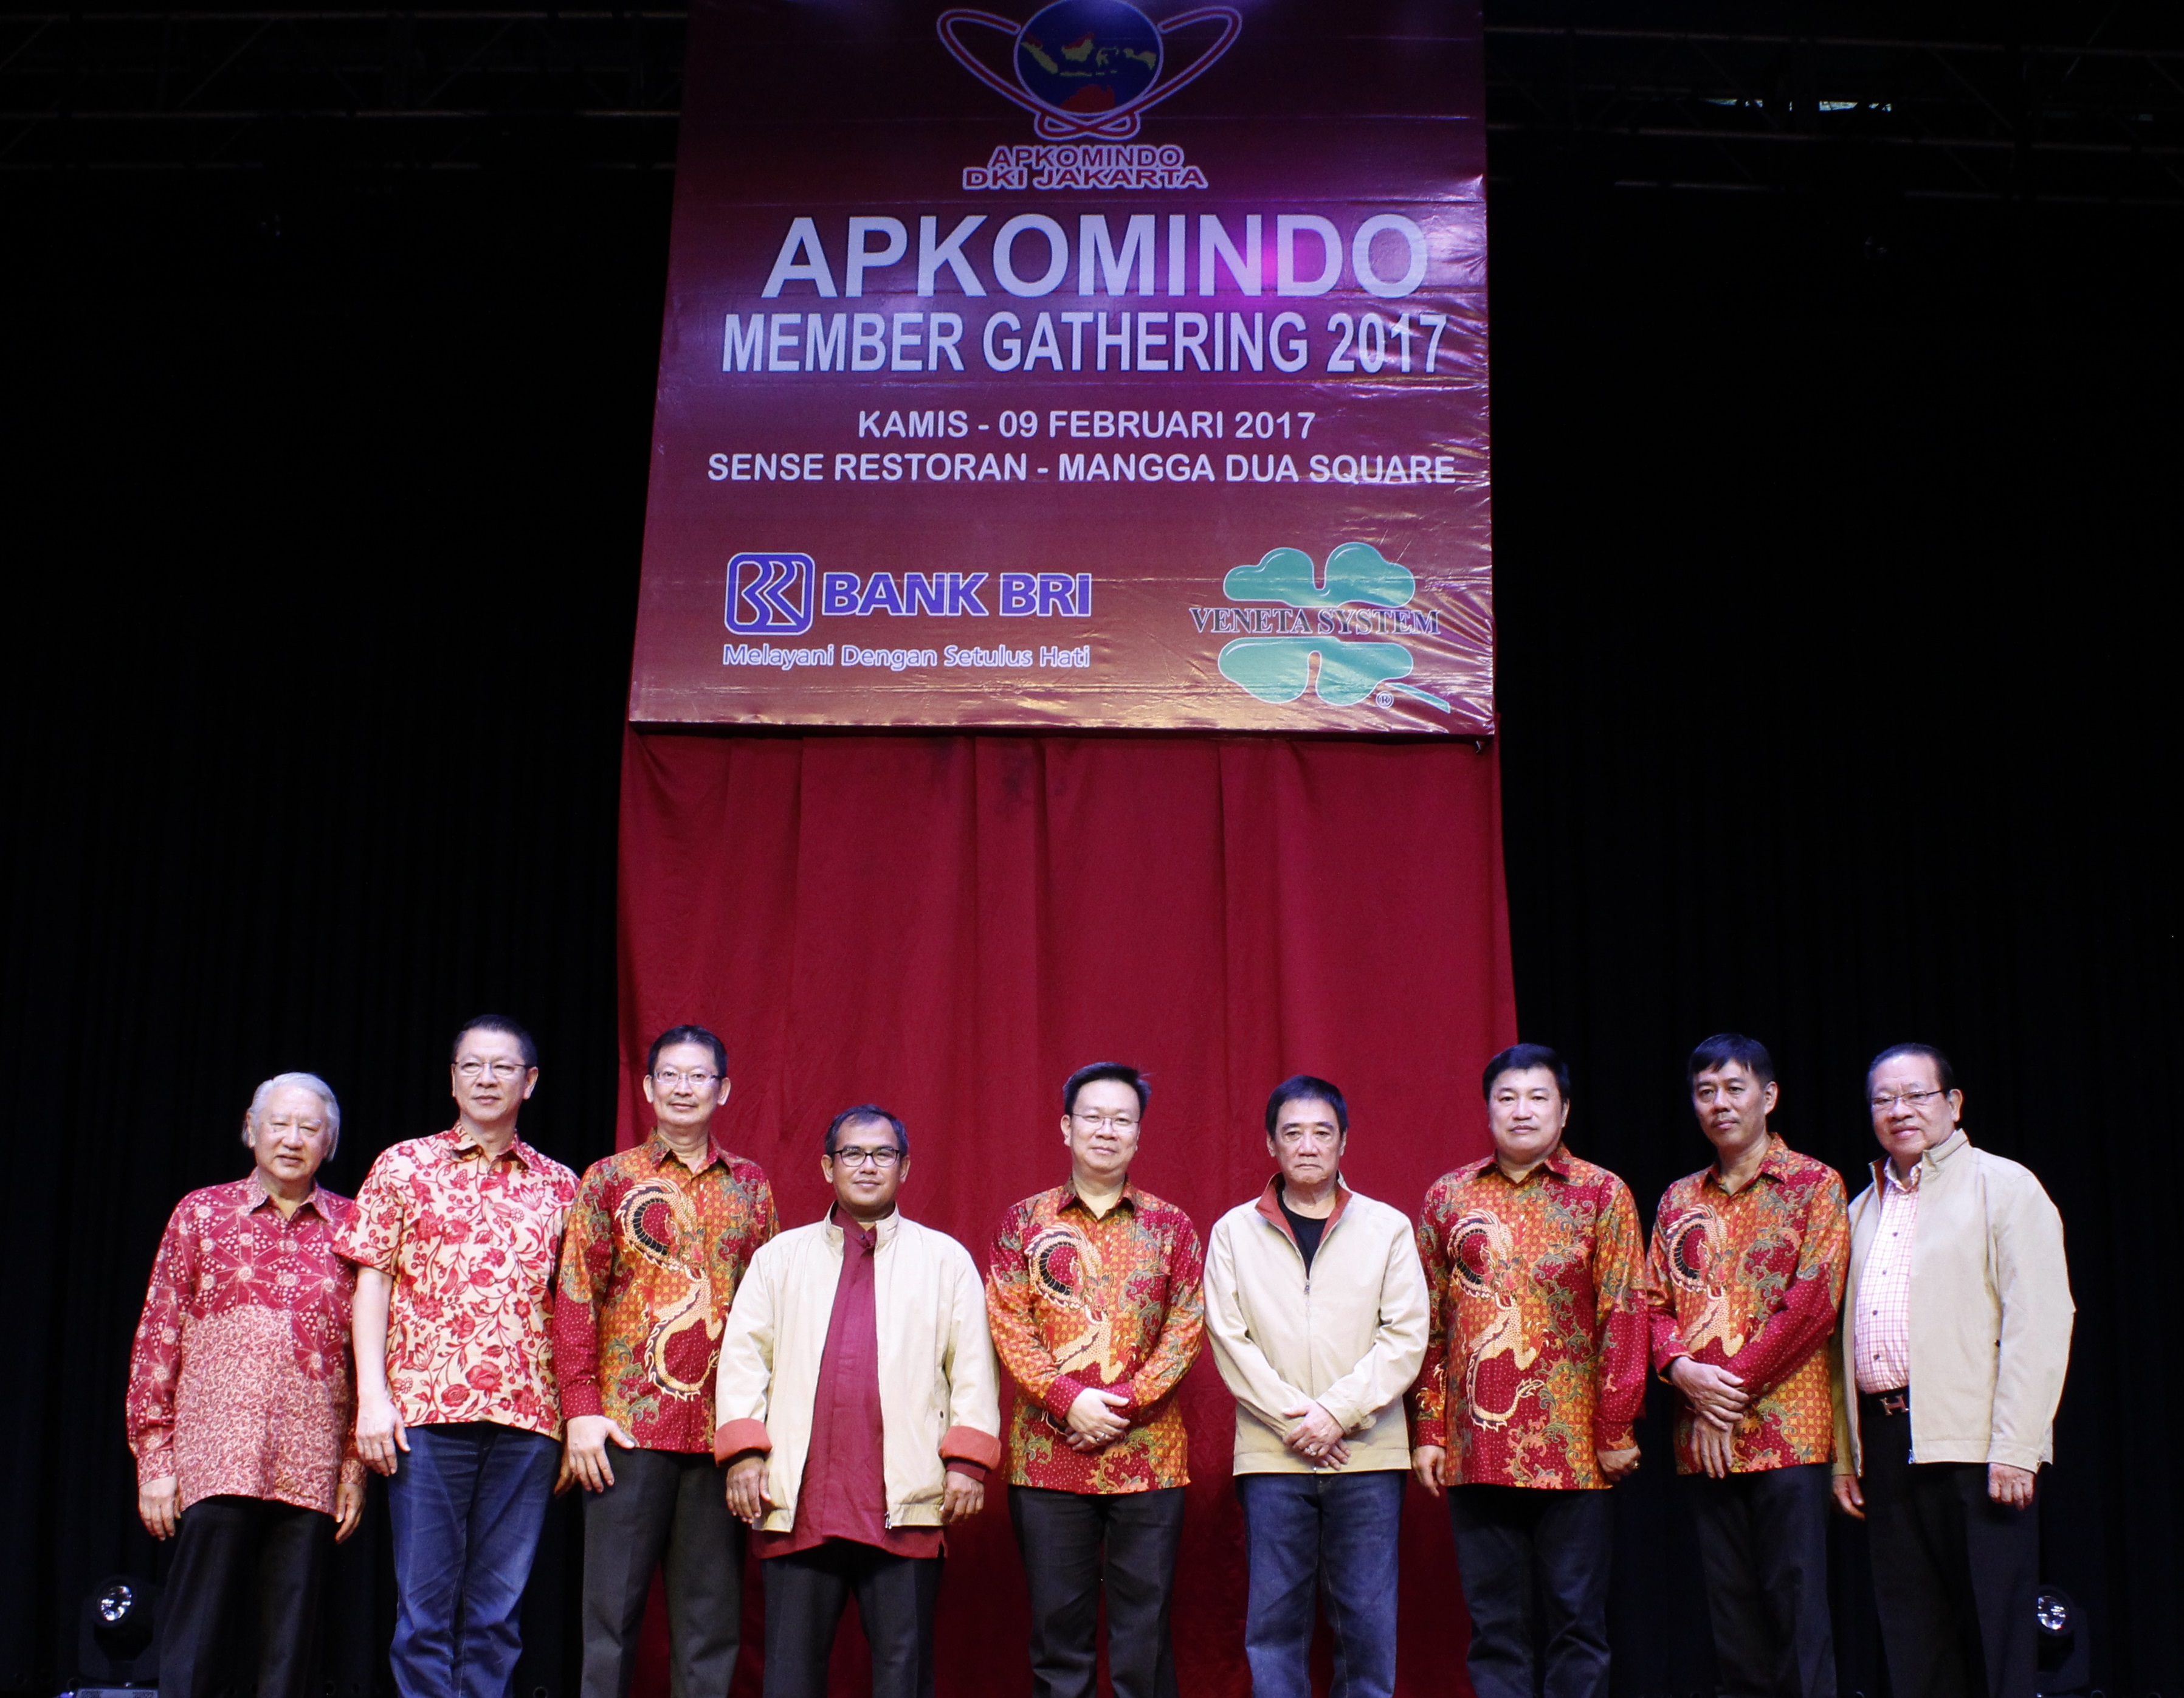 APKOMINDO Member Gathering 2017